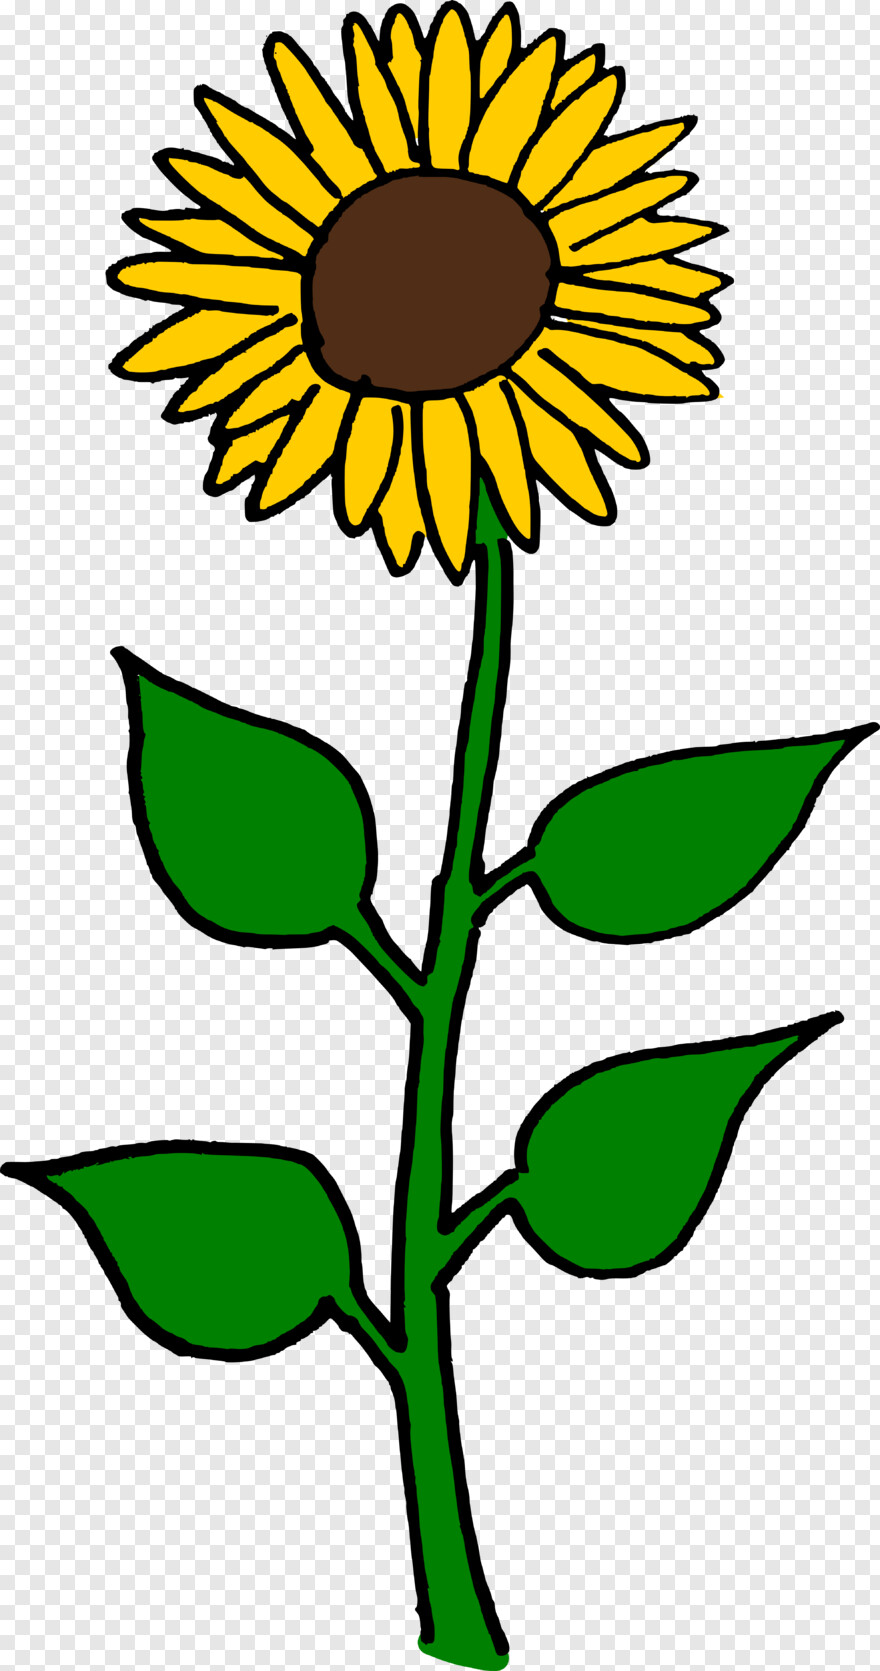 sunflower-vector # 472140